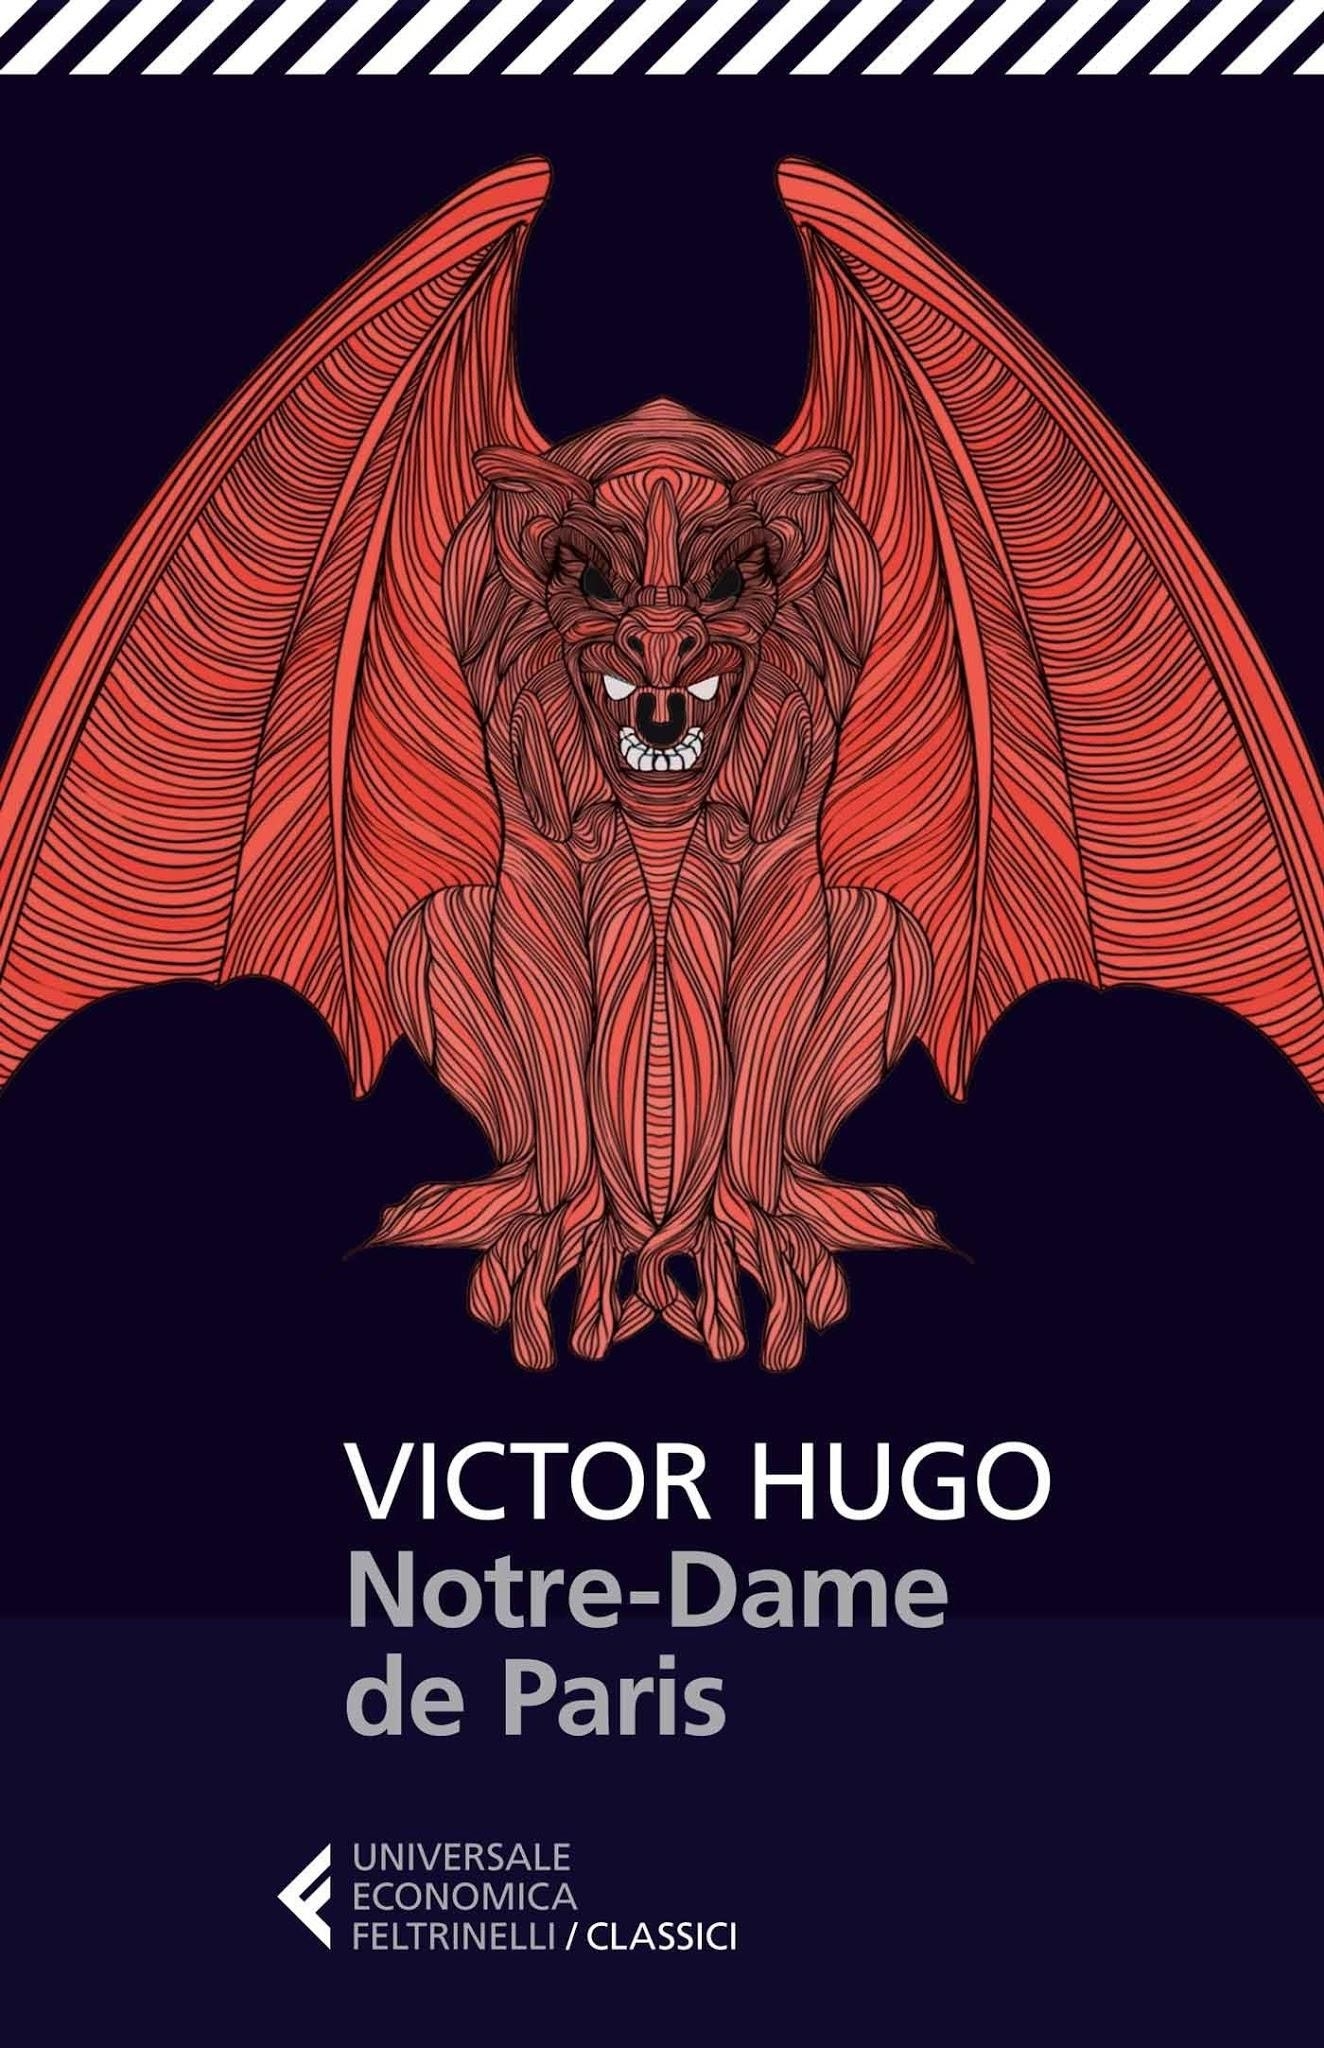 Victor Hugo Notre-Dame de Paris